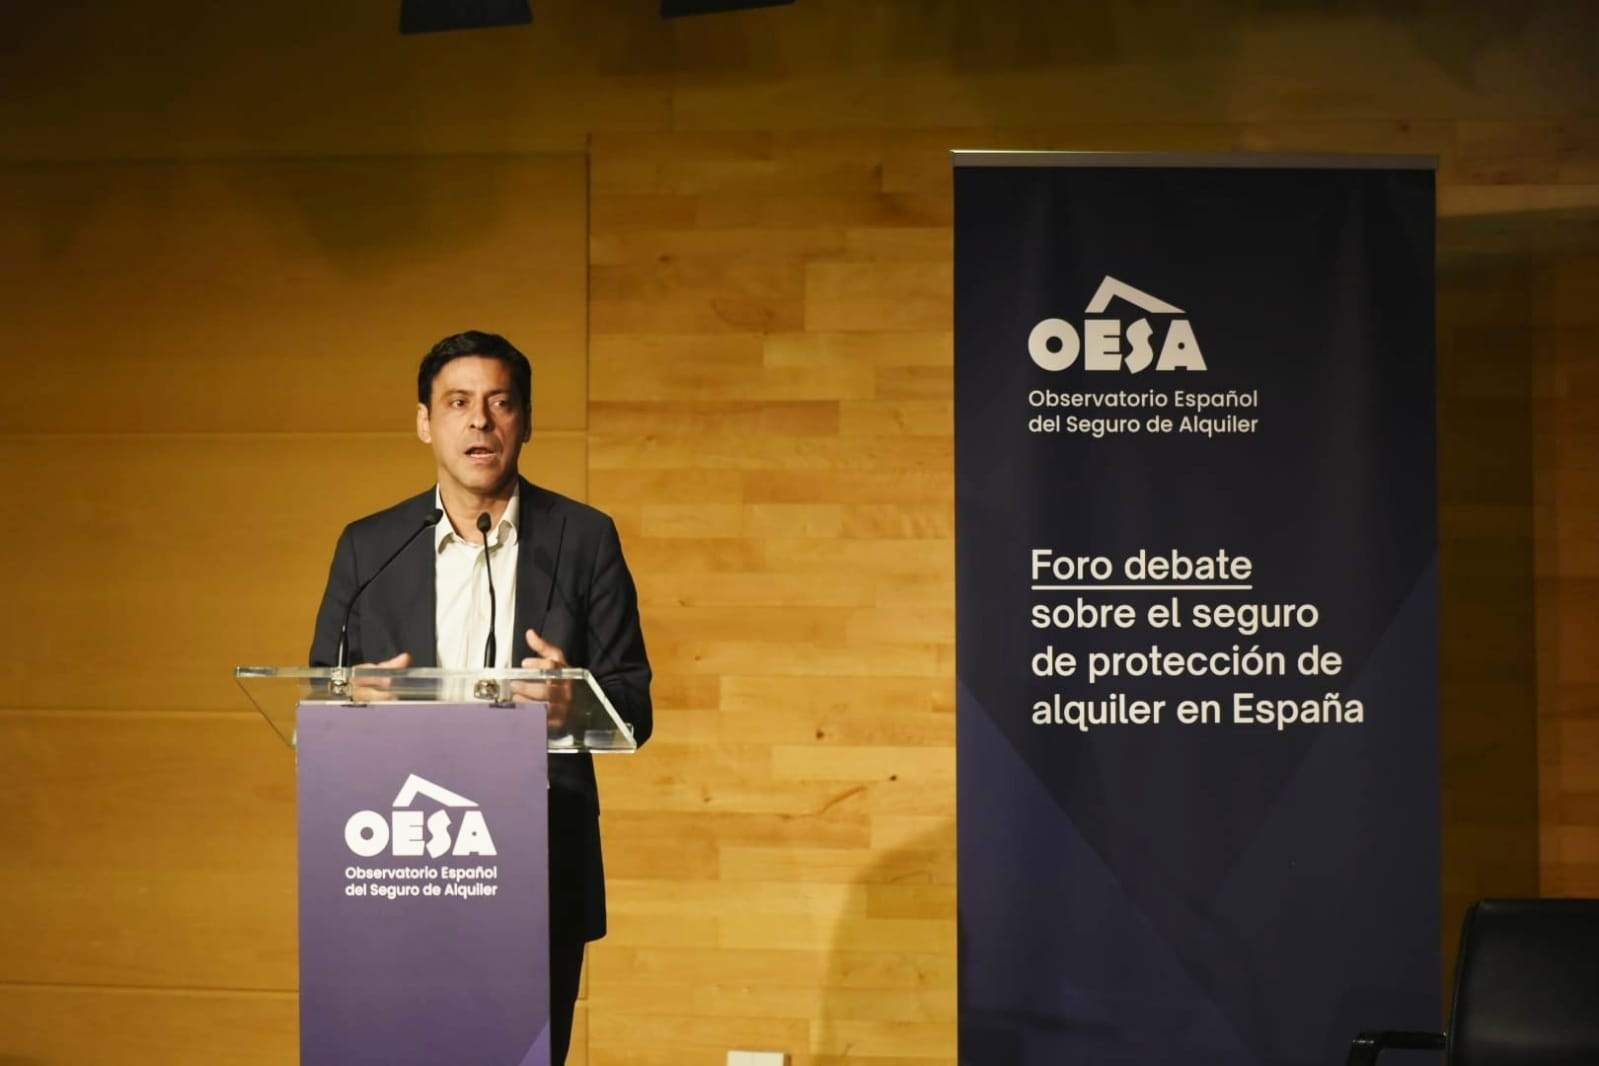 Habitatge xifra en 1 milió els immobles necessaris per solucionar el dèficit d'habitatge a Espanya